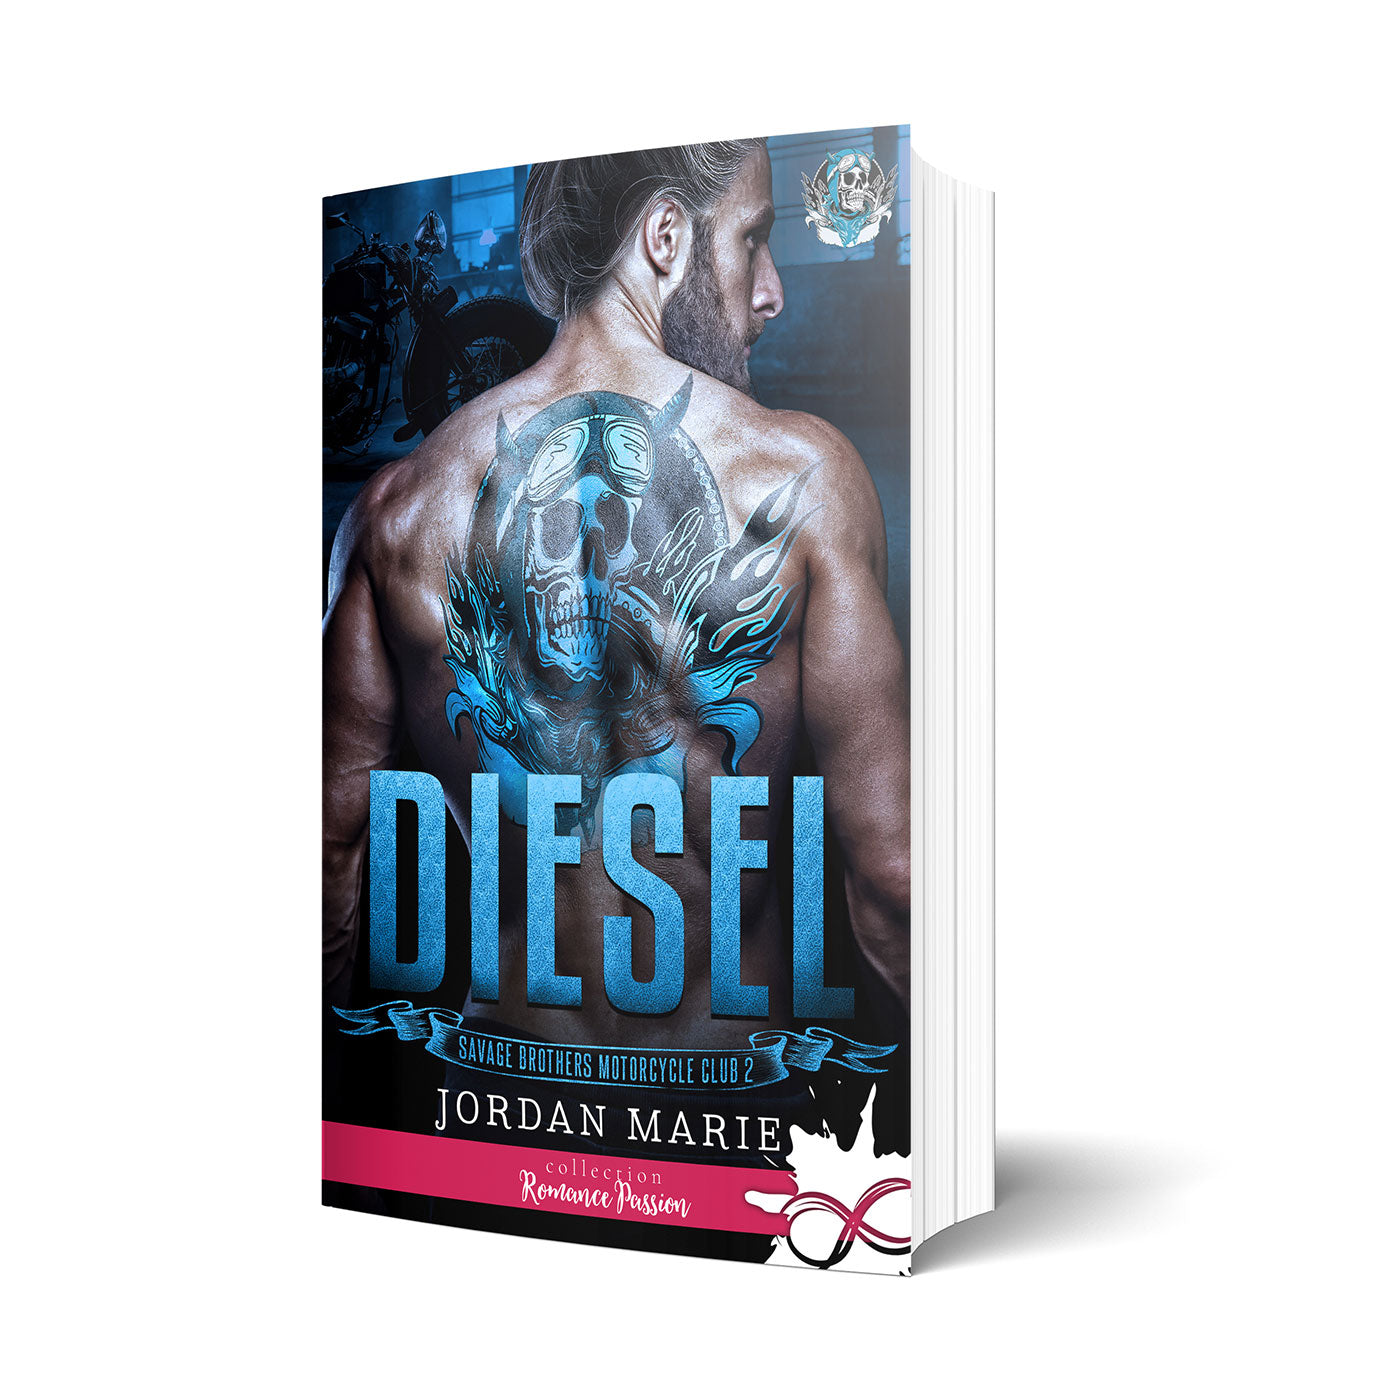 Diesel - Les éditions Bookmark